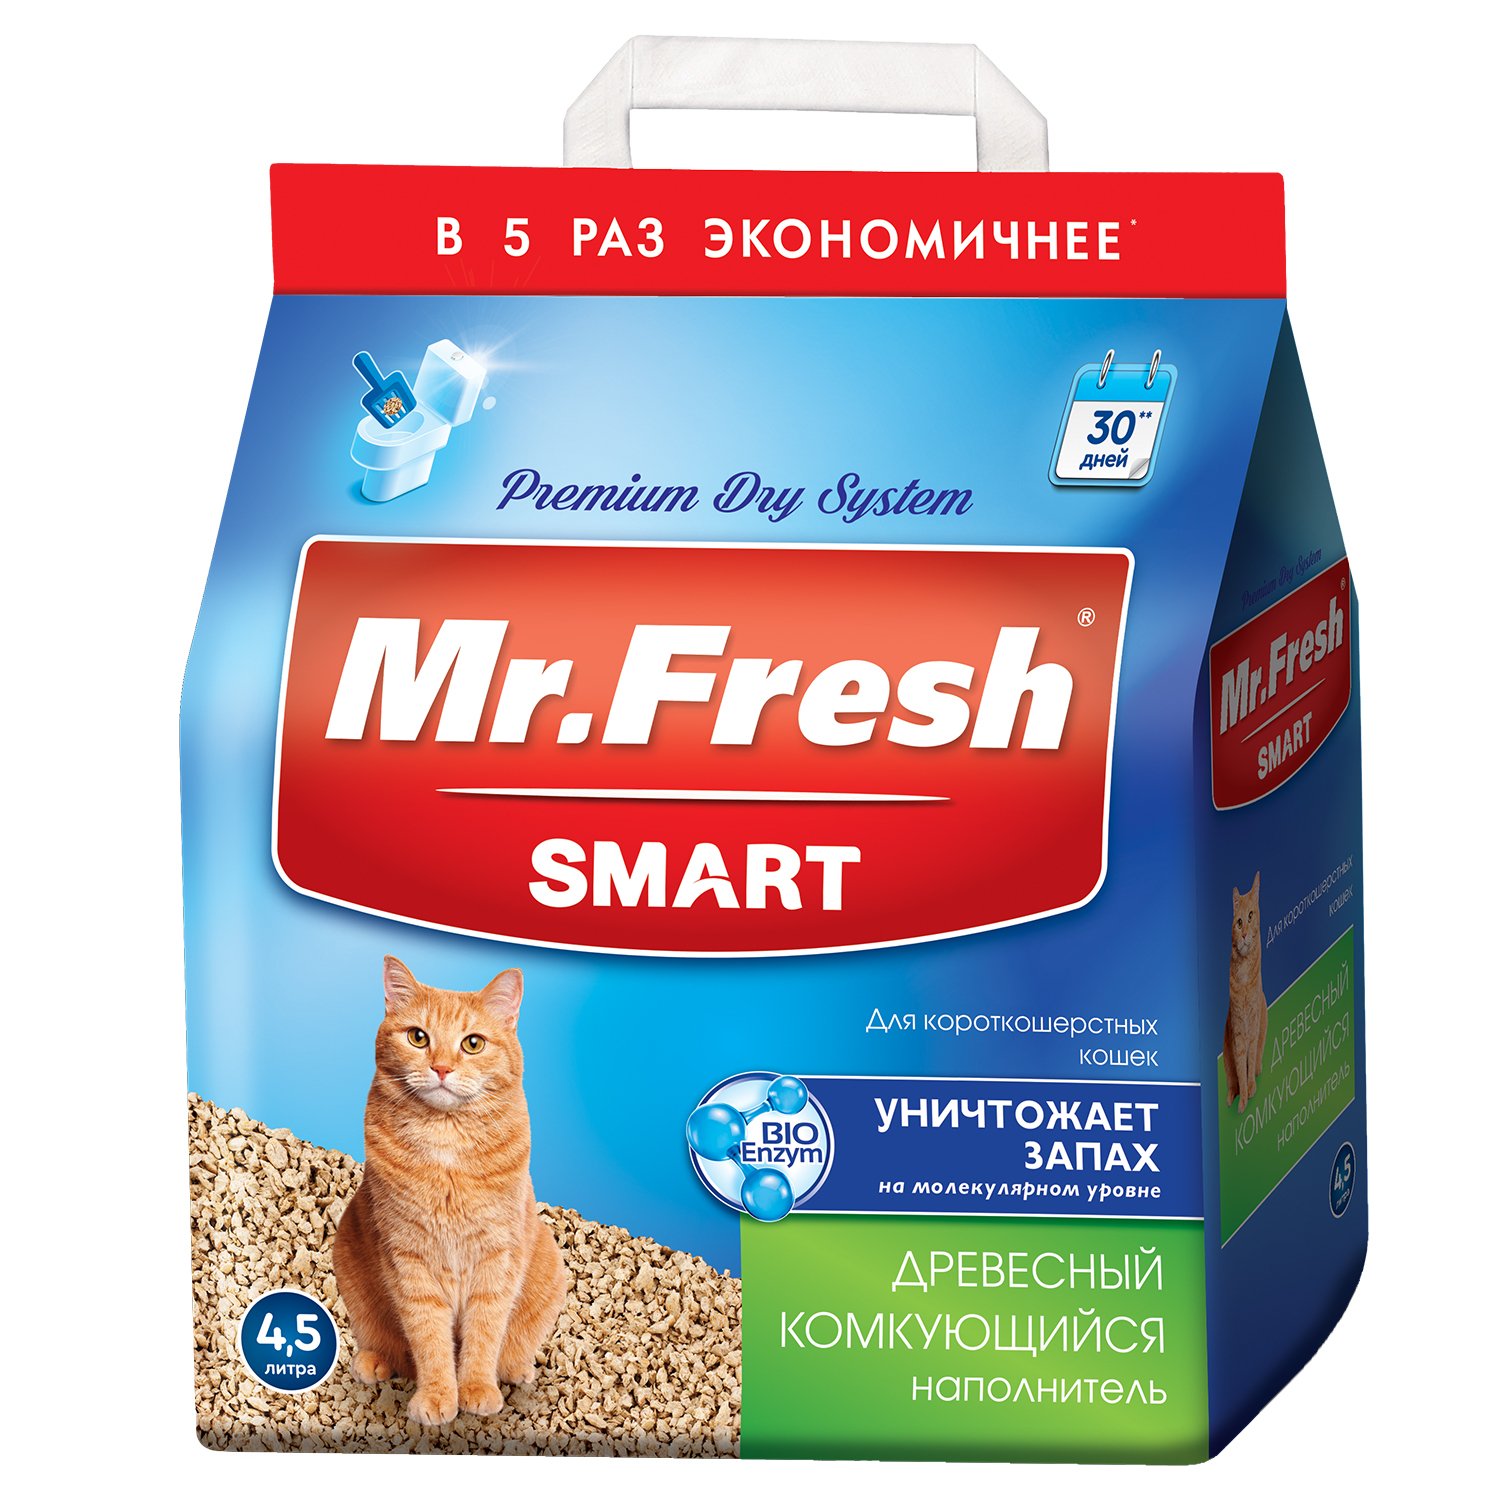 Наполнитель для кошек Mr.Fresh Smart короткошерстных 4.5л - фото 1